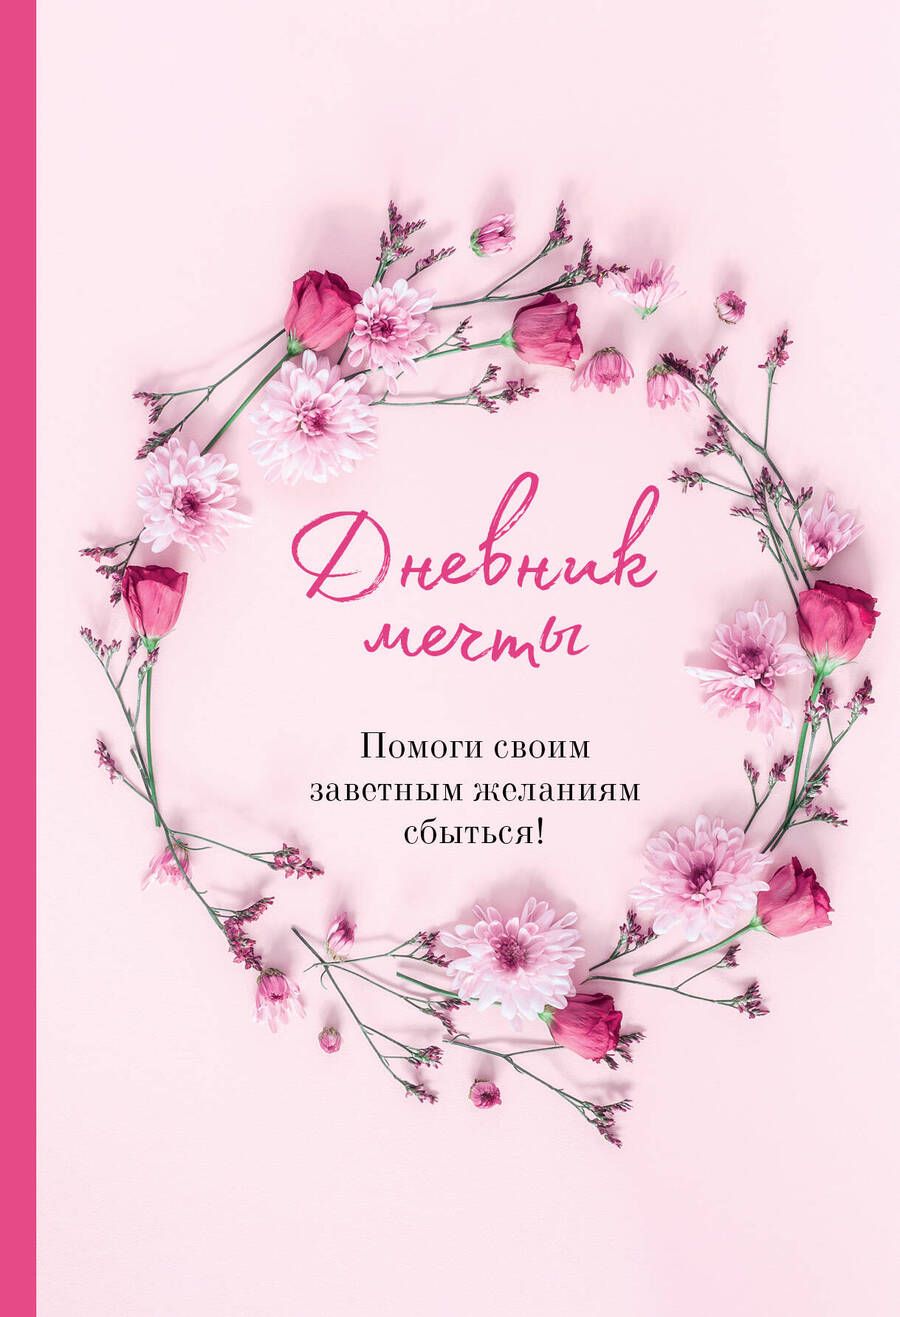 Обложка книги "Дяченко: Дневник мечты. Помоги своим заветным желаниям сбыться!"